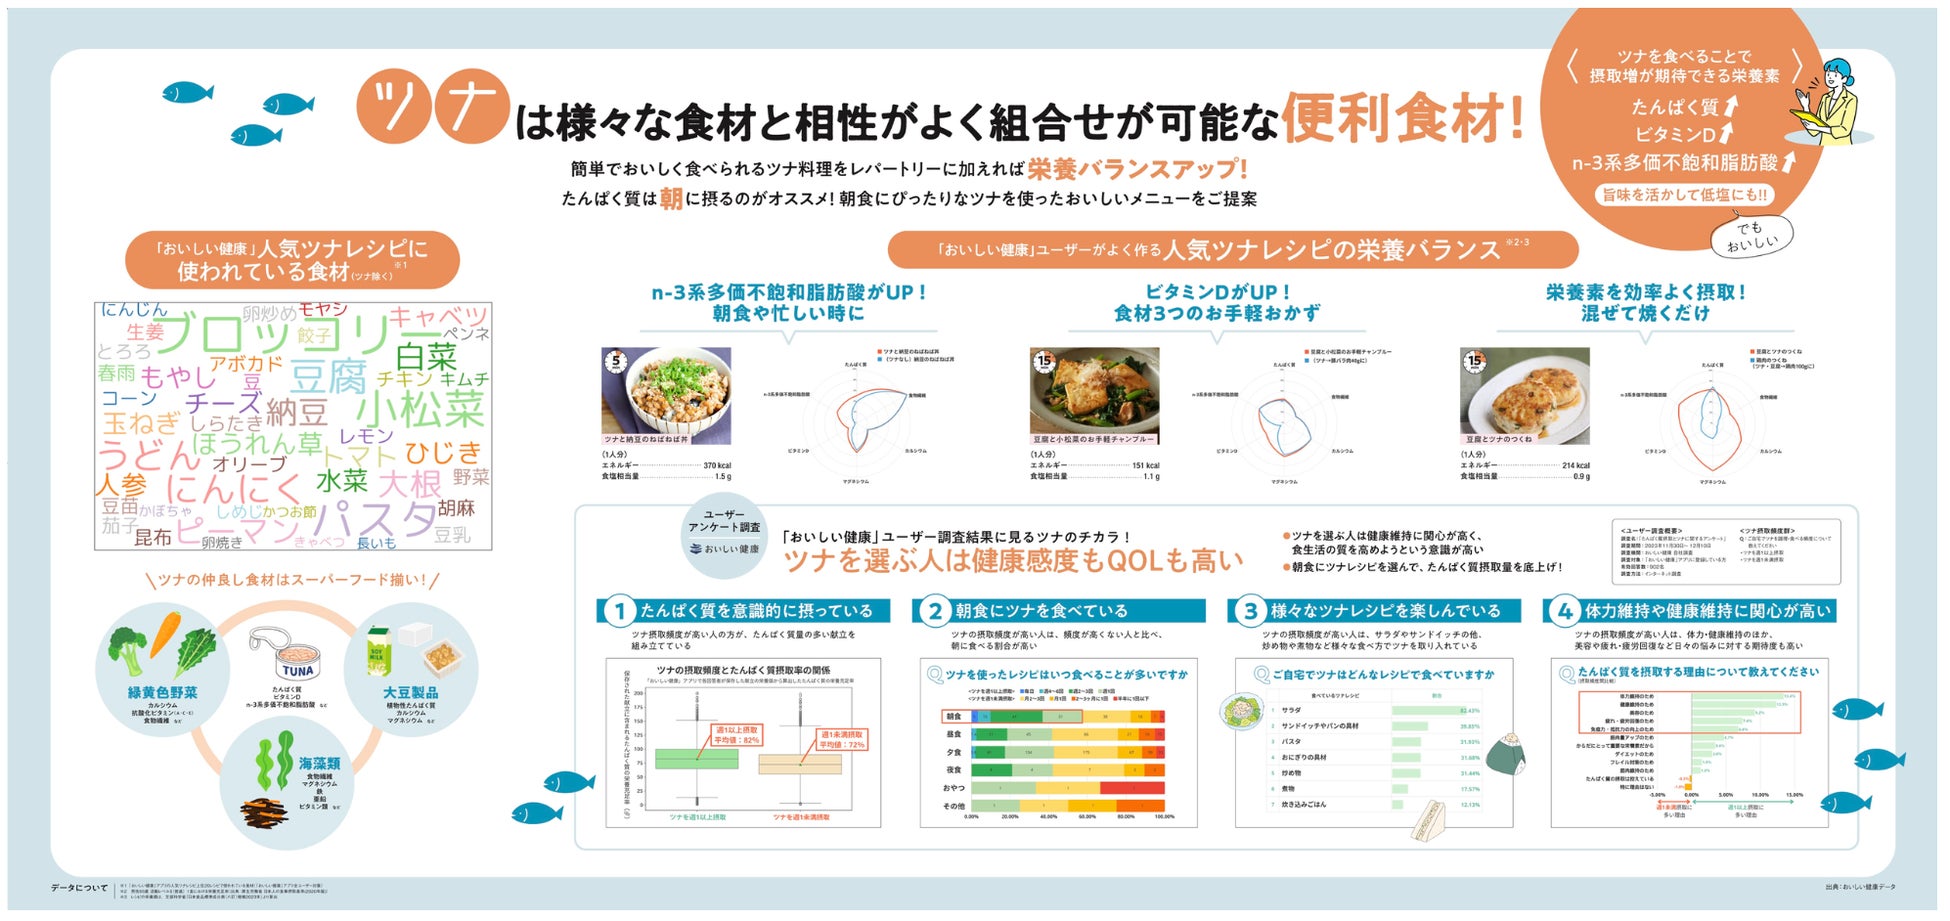 一般社団法人渋谷未来デザインとキユーピー株式会社が「SHIBUYA Urban Farming Project」を発足